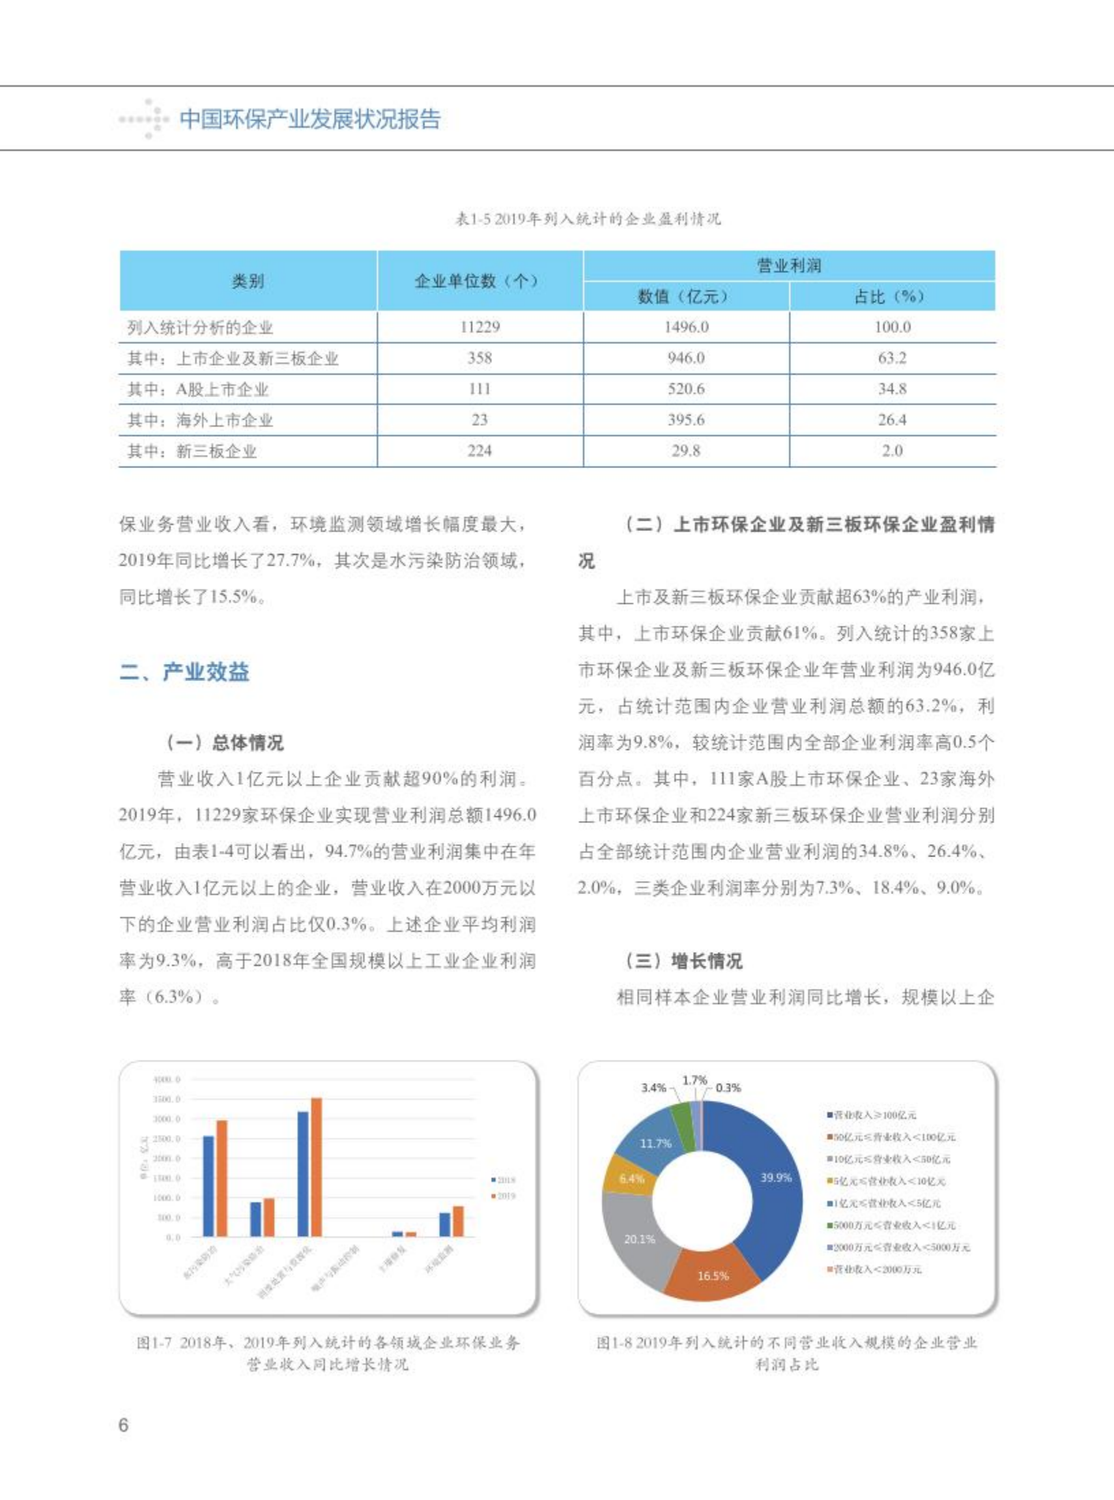 【2020】中国环保产业发展状况报告_07.png